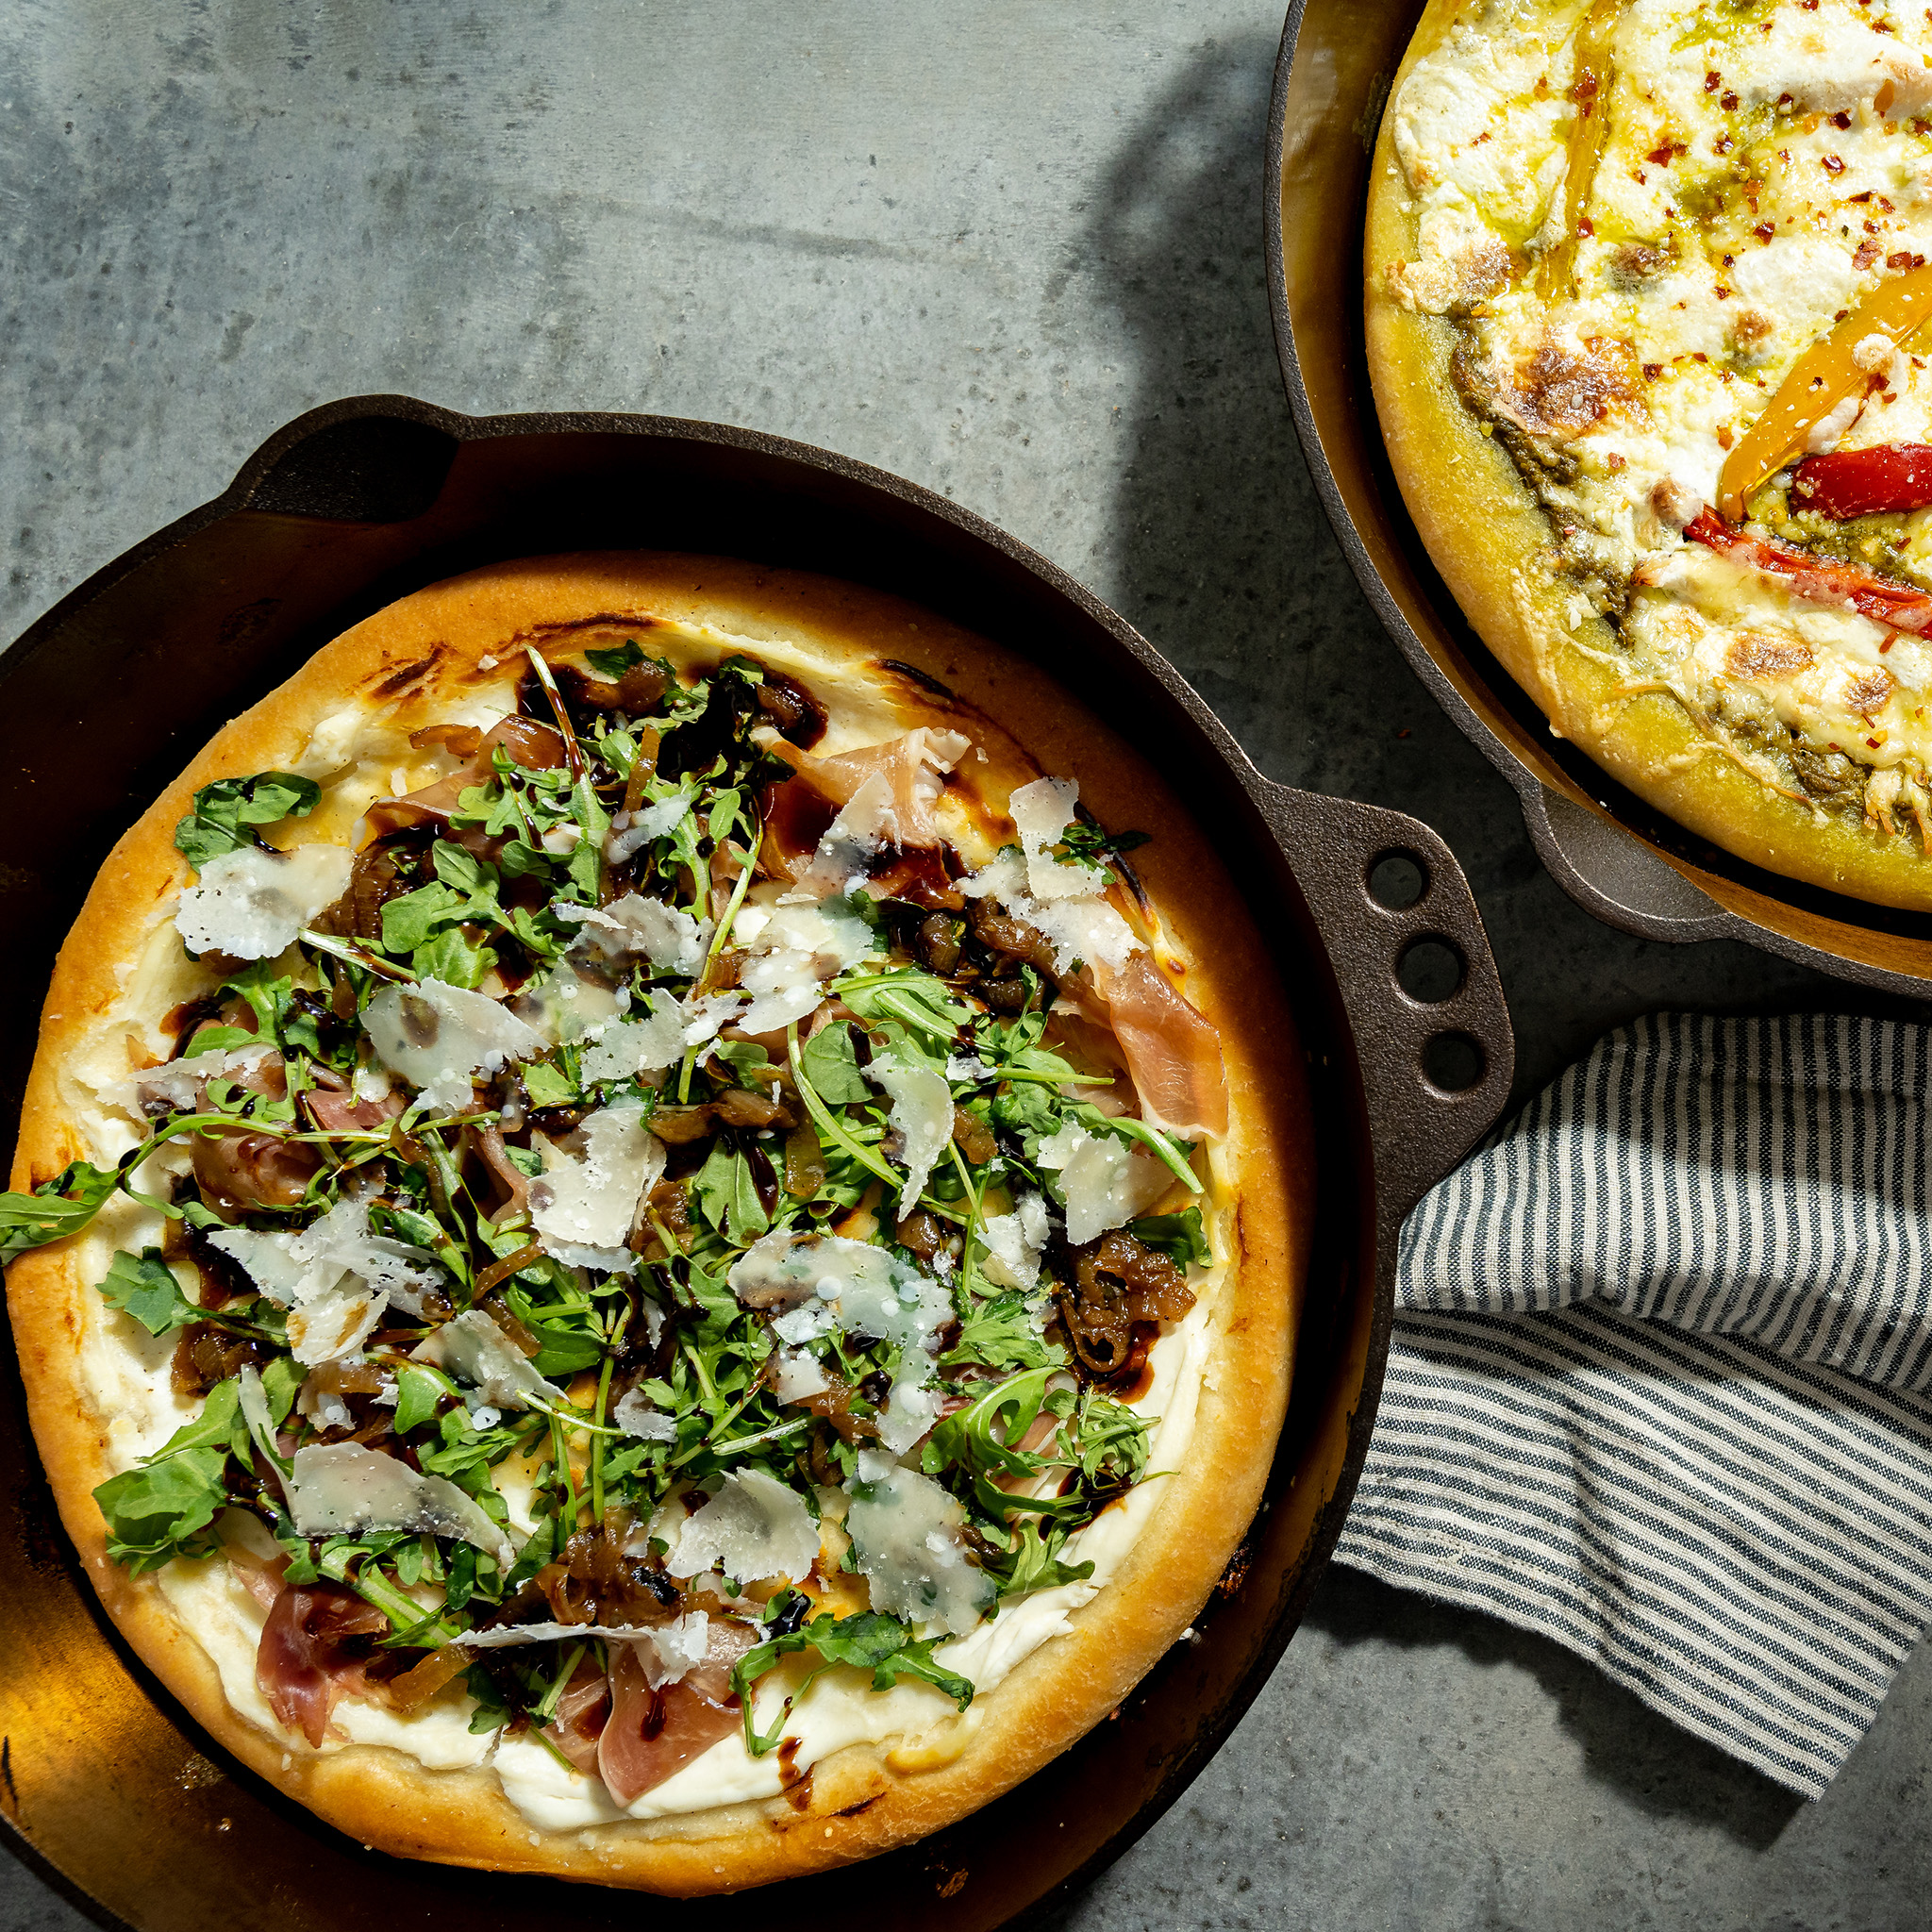 Joanna Gaines's Arugula and Prosciutto Pizza